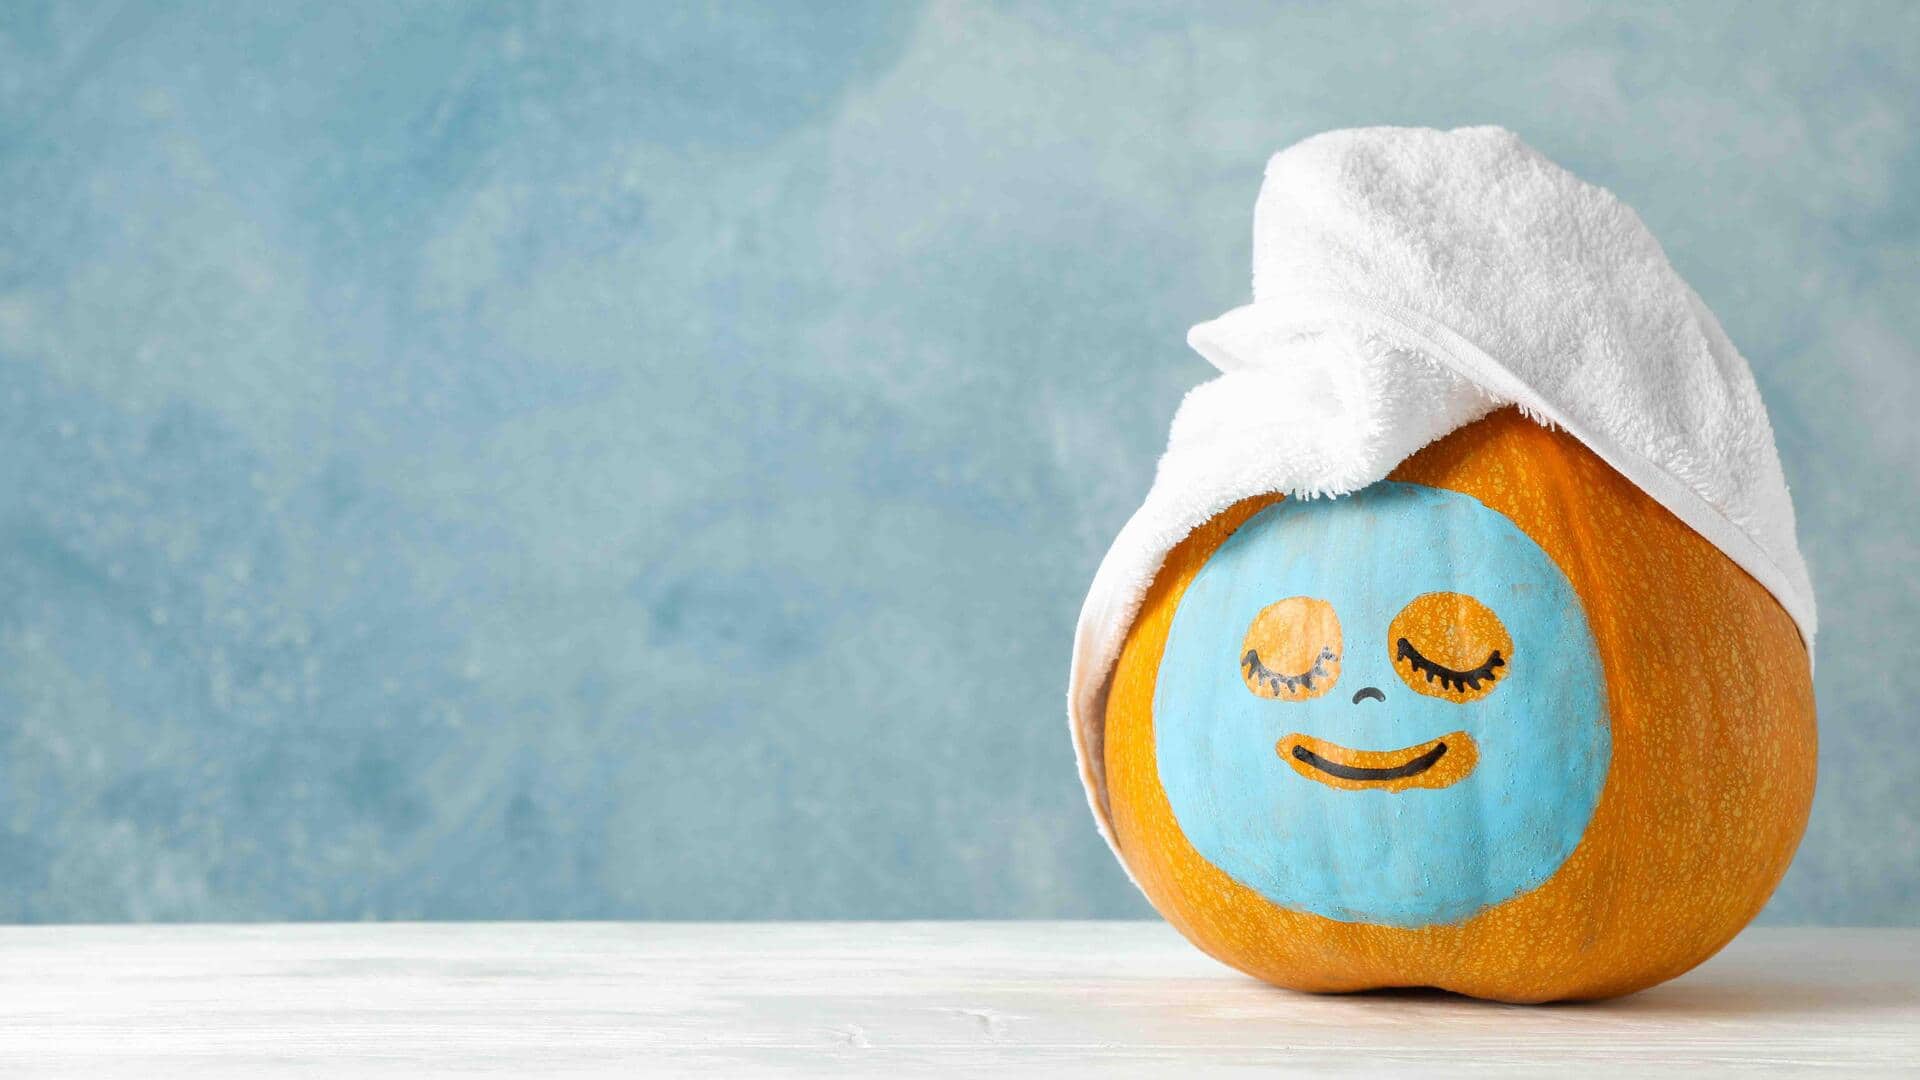 Pumpkin-based face masks to enrich your skin